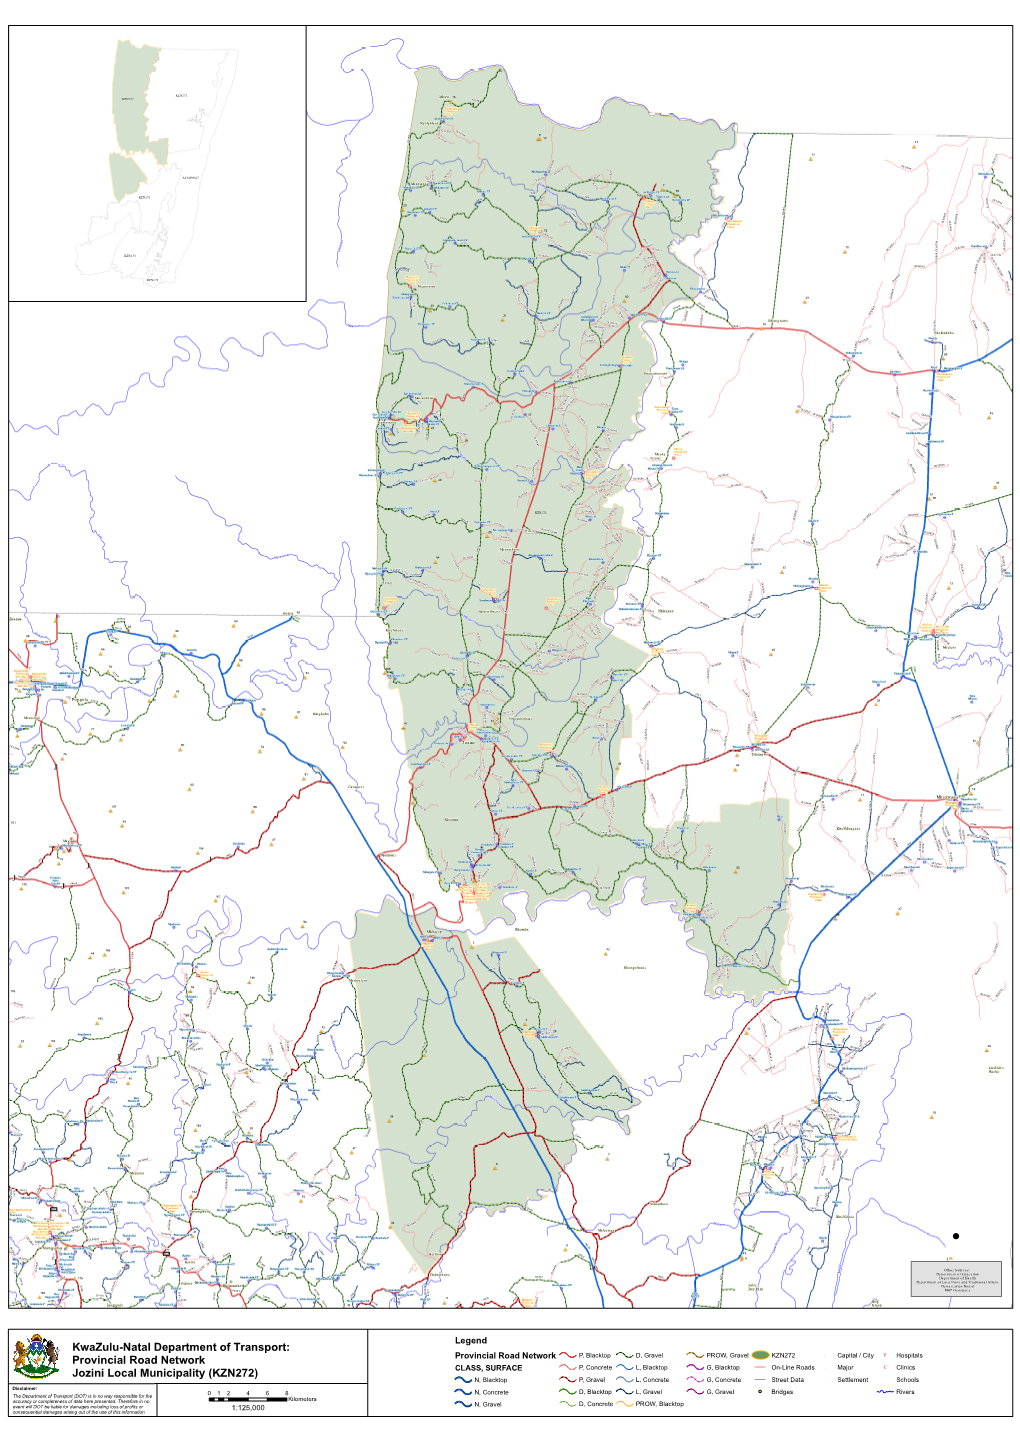 Provincial Road Network Jozini Local Municipality (KZN272)